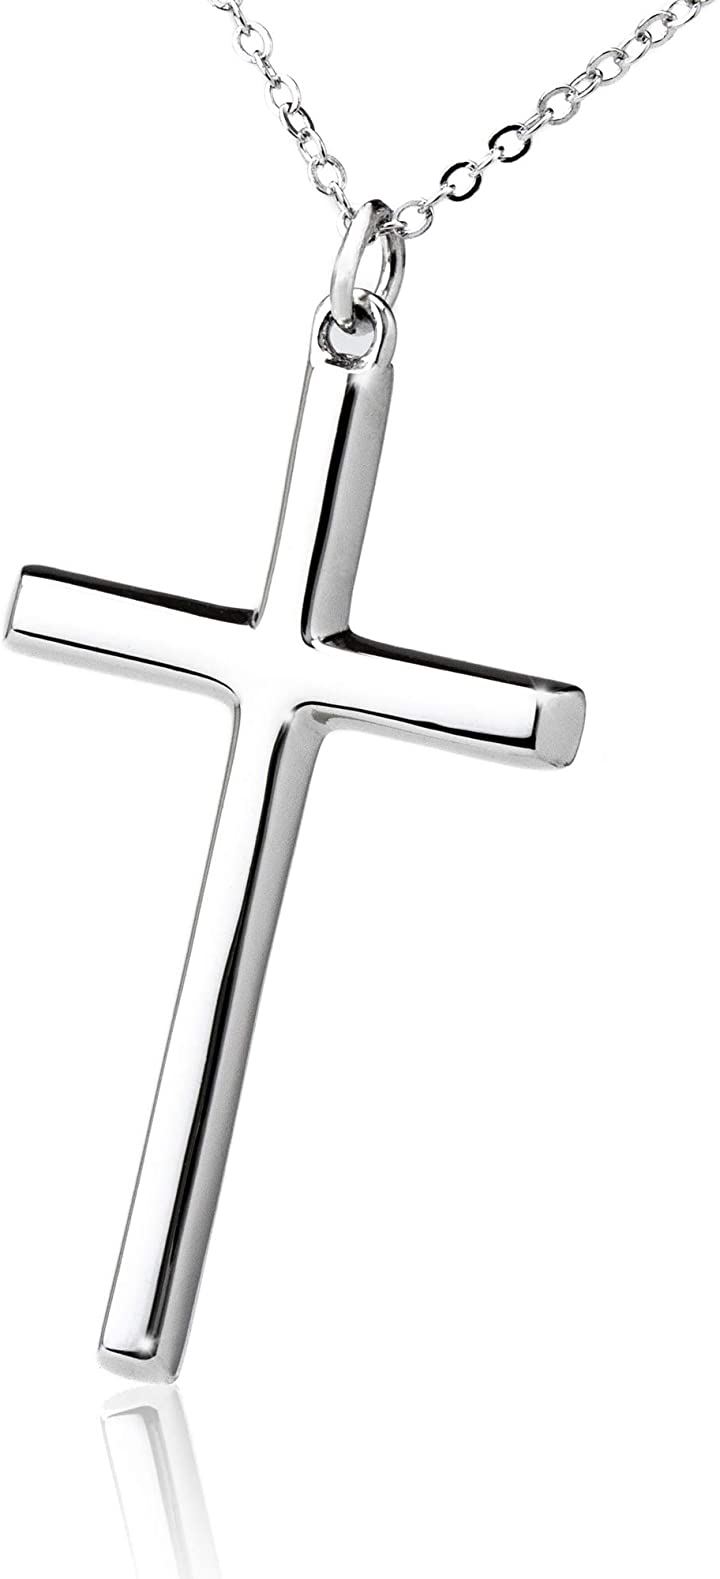 クロス ネックレス シルバー 925 十字架 ブランド メンズ レディース ユニセックス プレゼント 専用ボックス付き チェーン長さ50cm